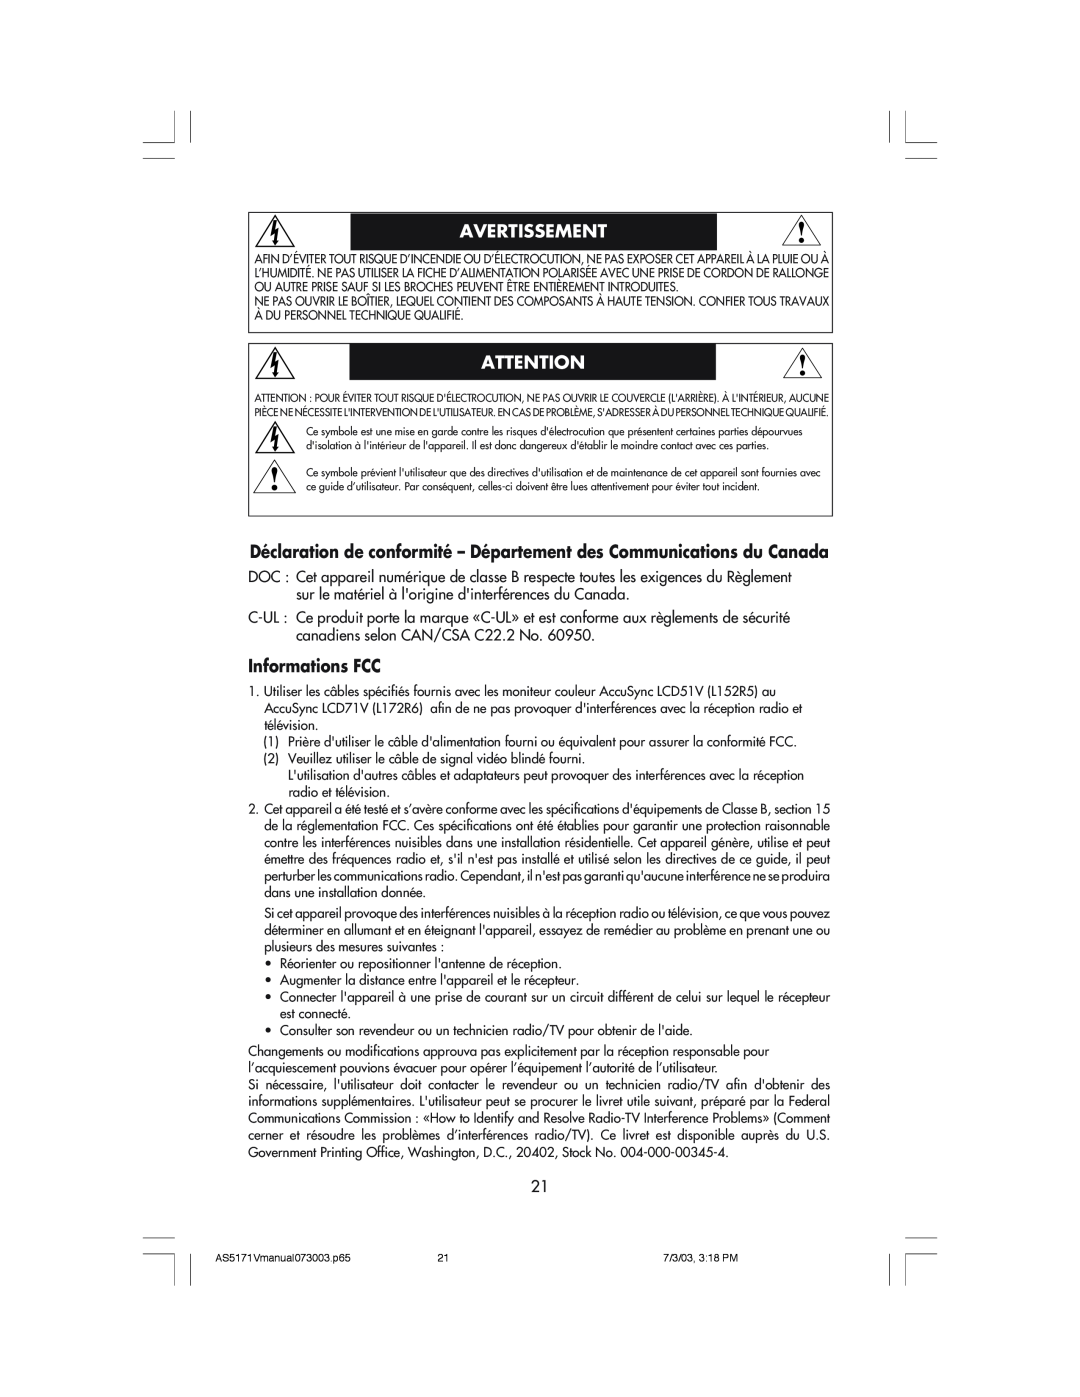 NEC LCD71V manual Déclaration de conformité - Département des Communications du Canada, Informations FCC, Avertissement 